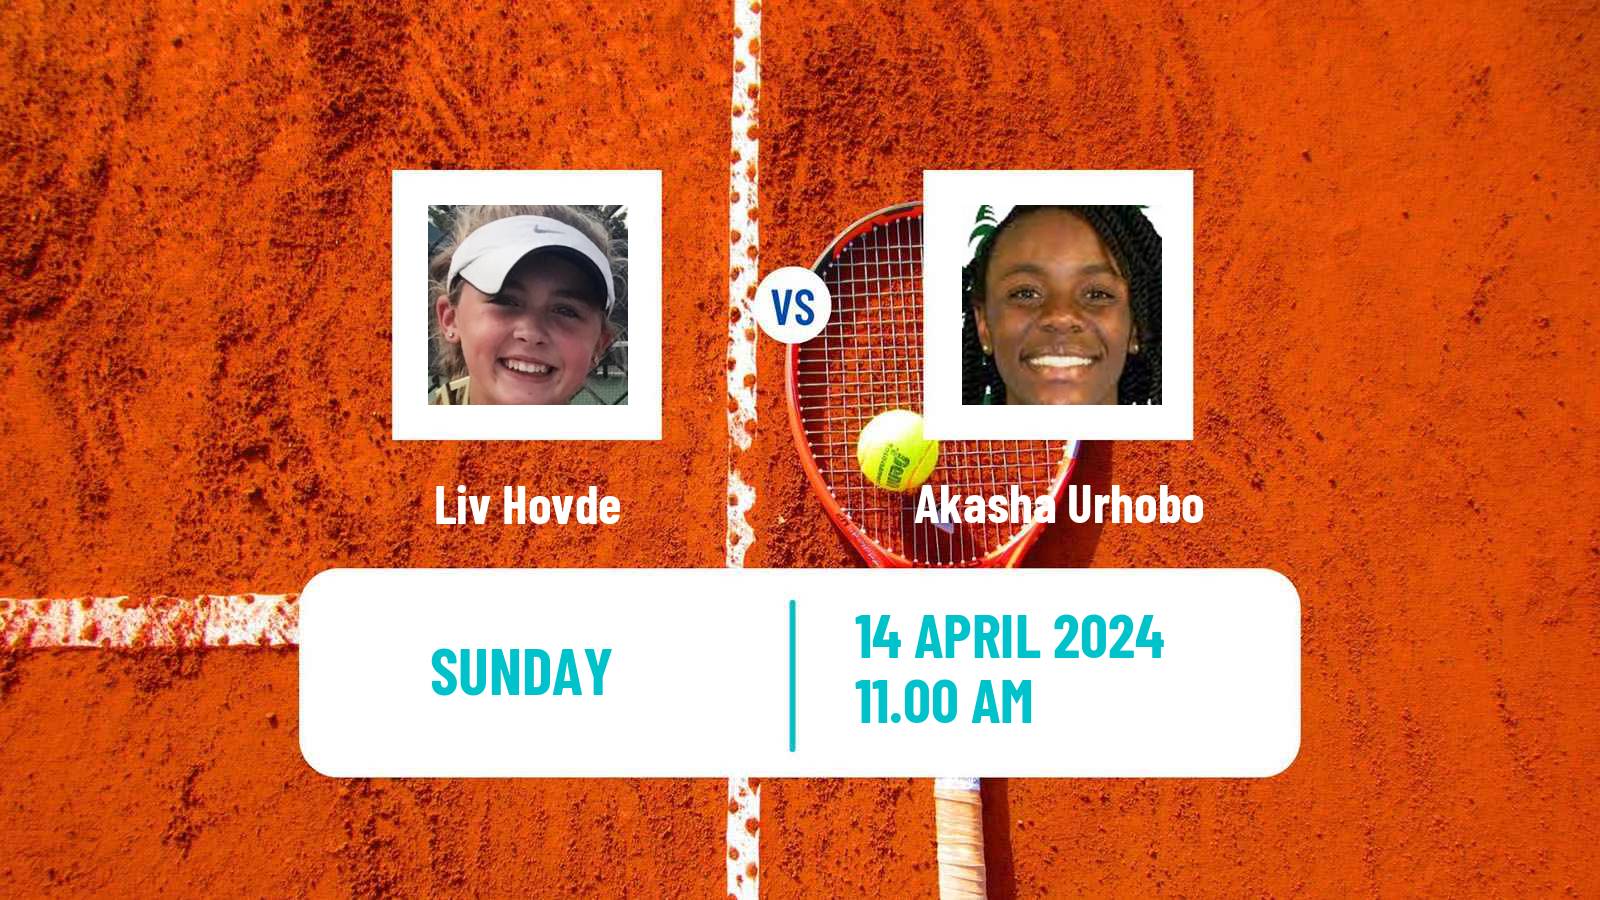 Tennis ITF W35 Boca Raton Fl Women Liv Hovde - Akasha Urhobo